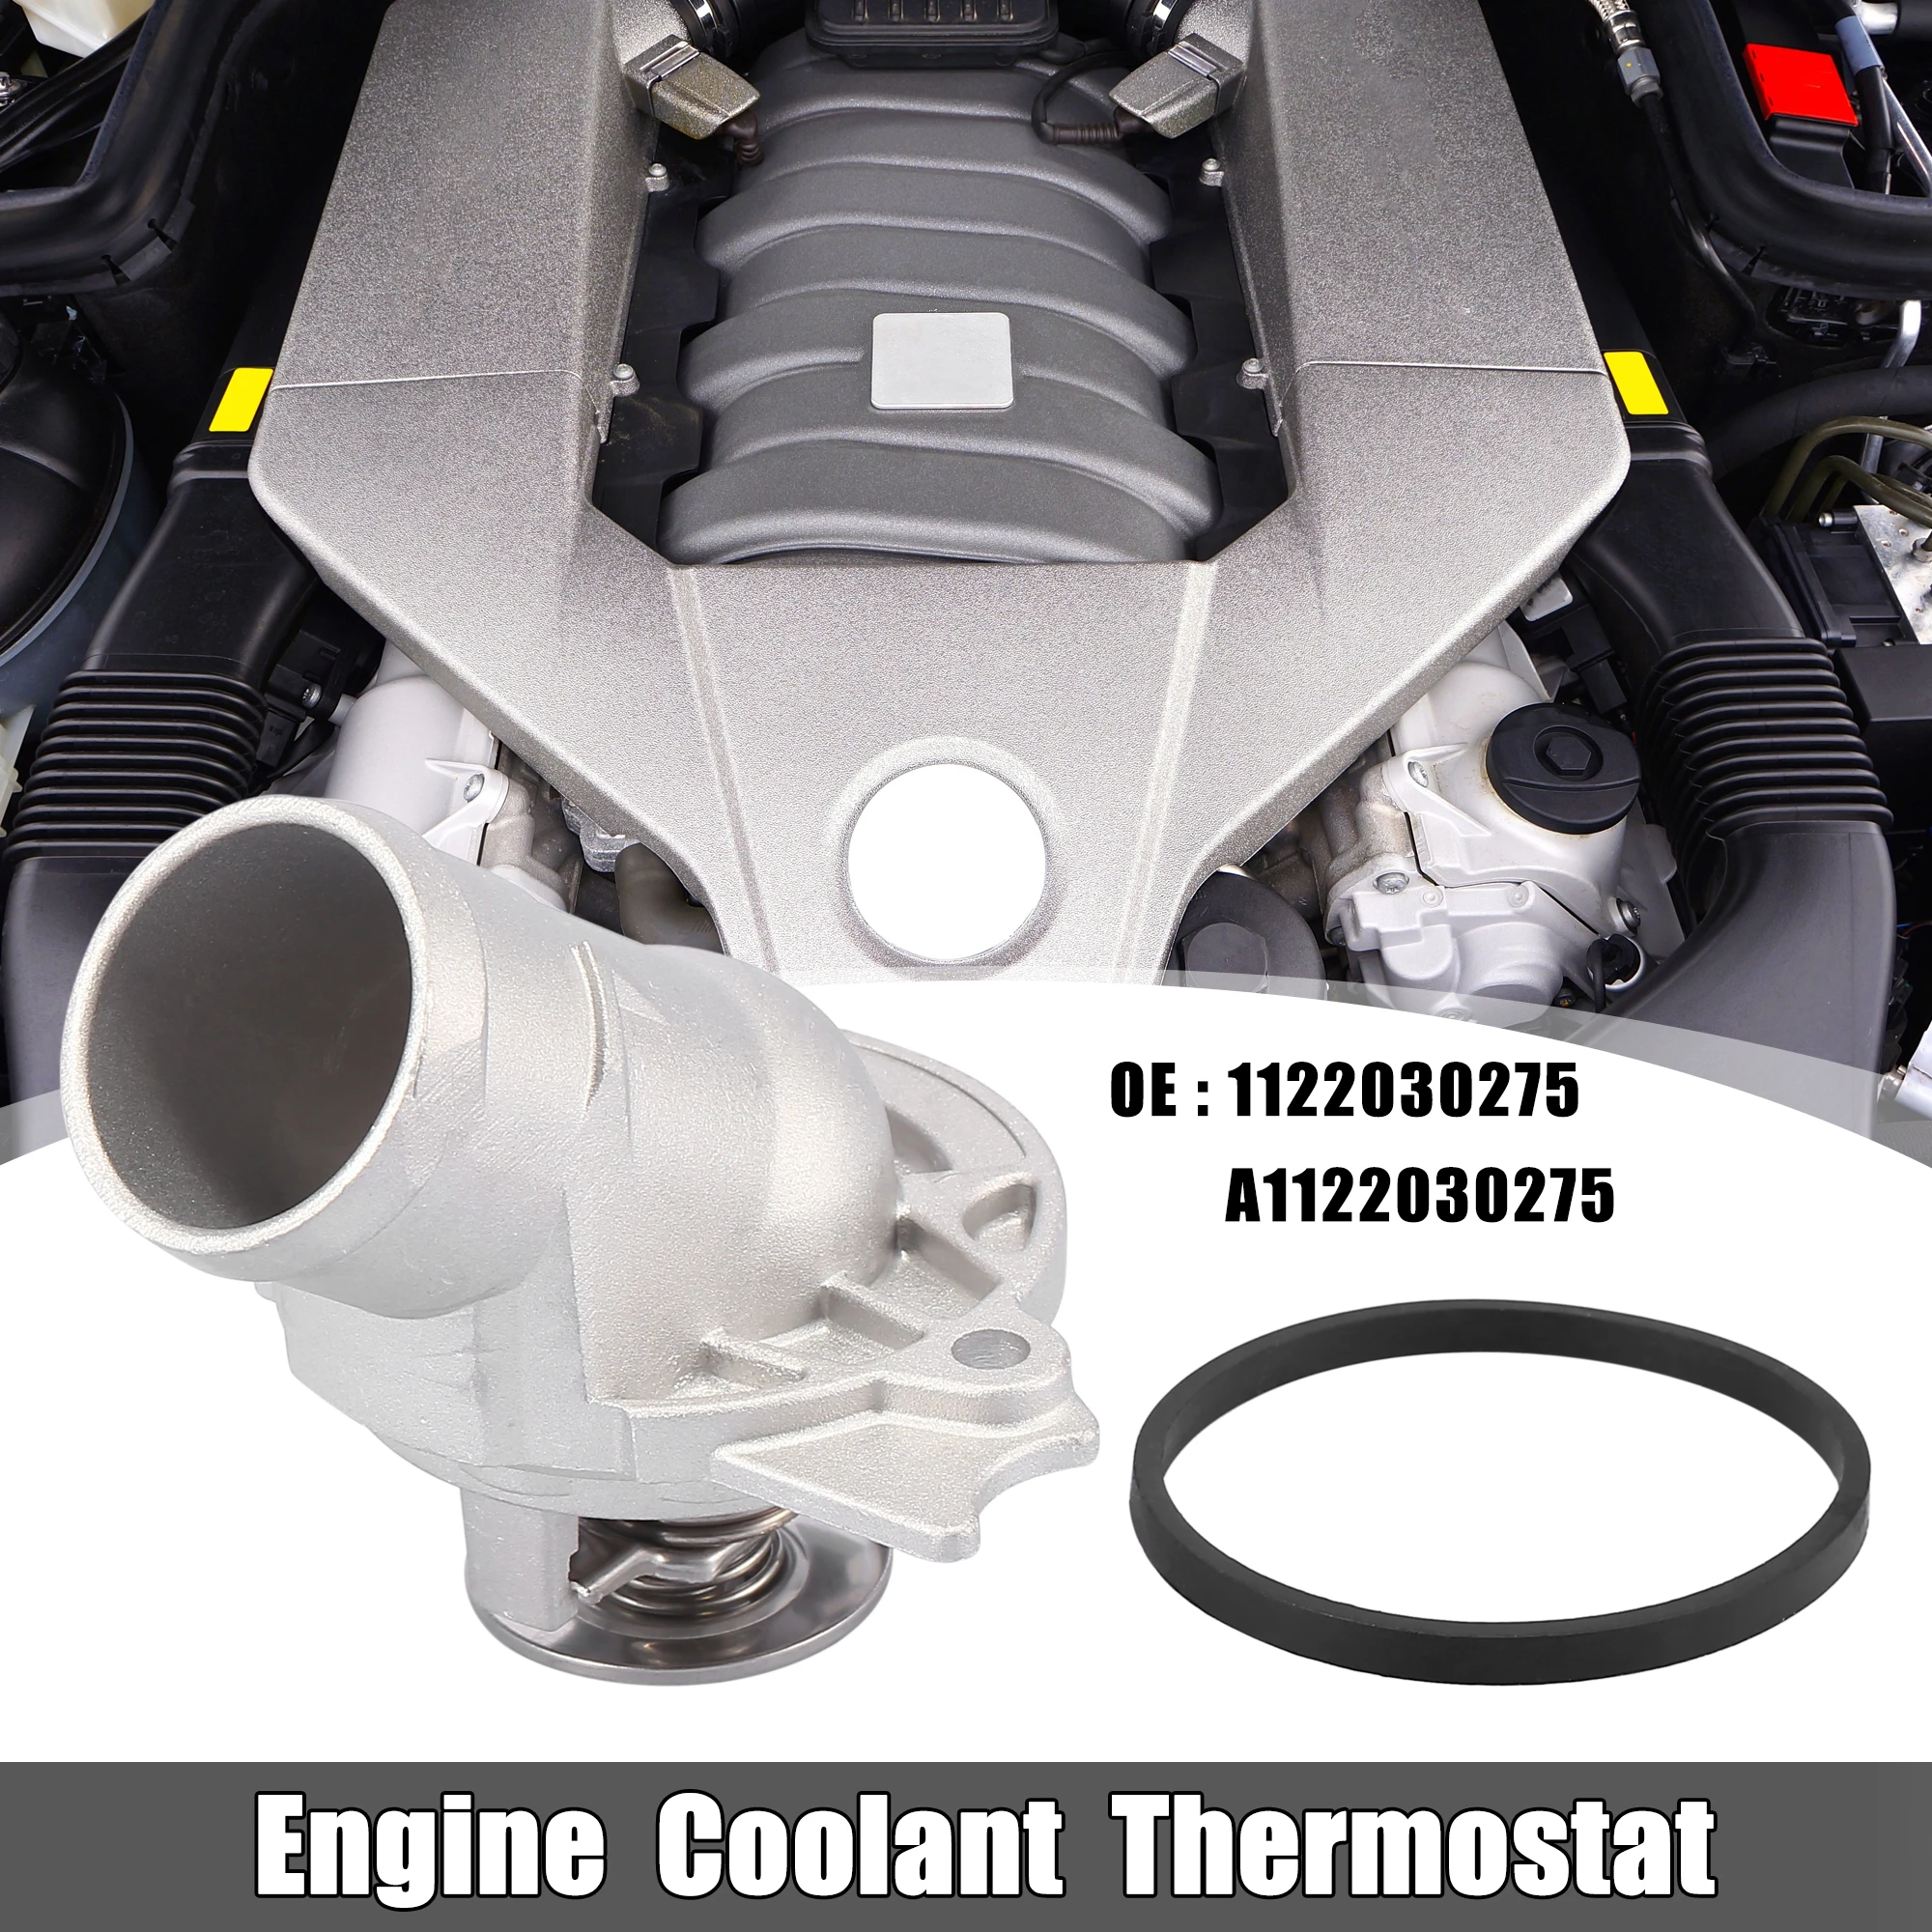 

X Autohaux Car Engine Coolant Thermostat 1122030275 for Mercedes-Benz C240 S430 CLK320 SL500 E430 C43 AMG CLS500 Accessories